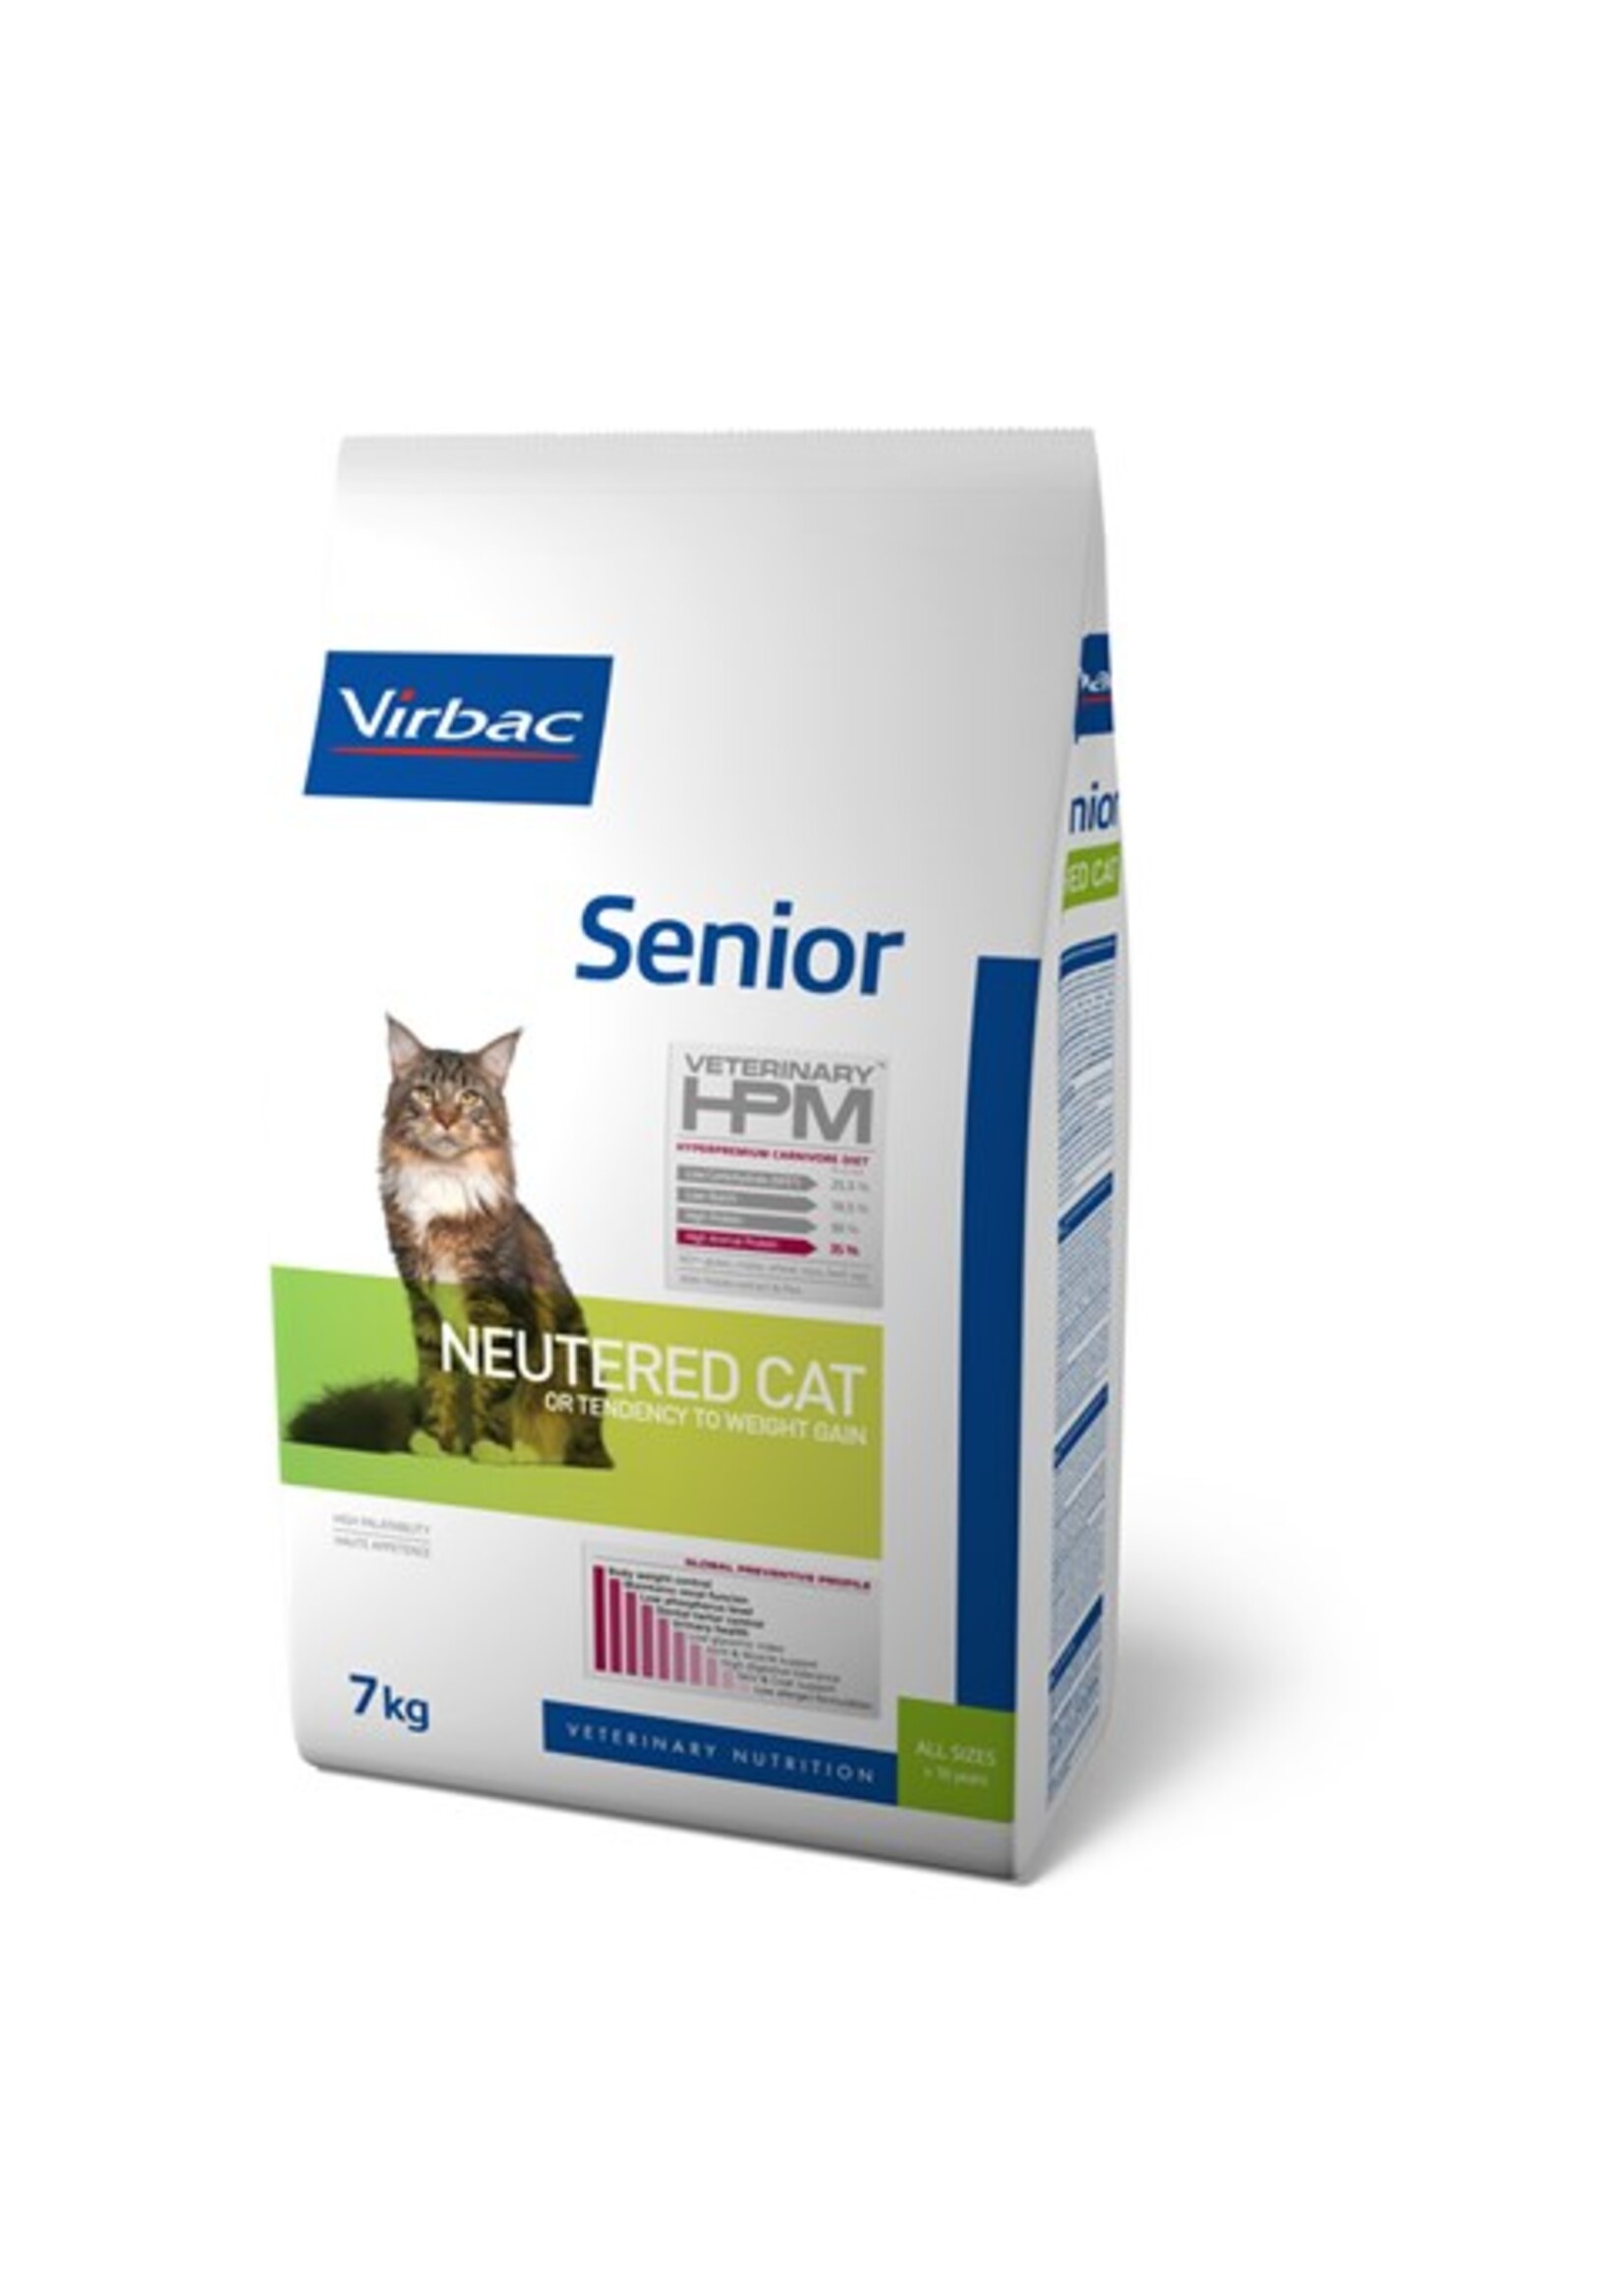 Virbac Virbac Hpm Cat Neutered Senior 7kg